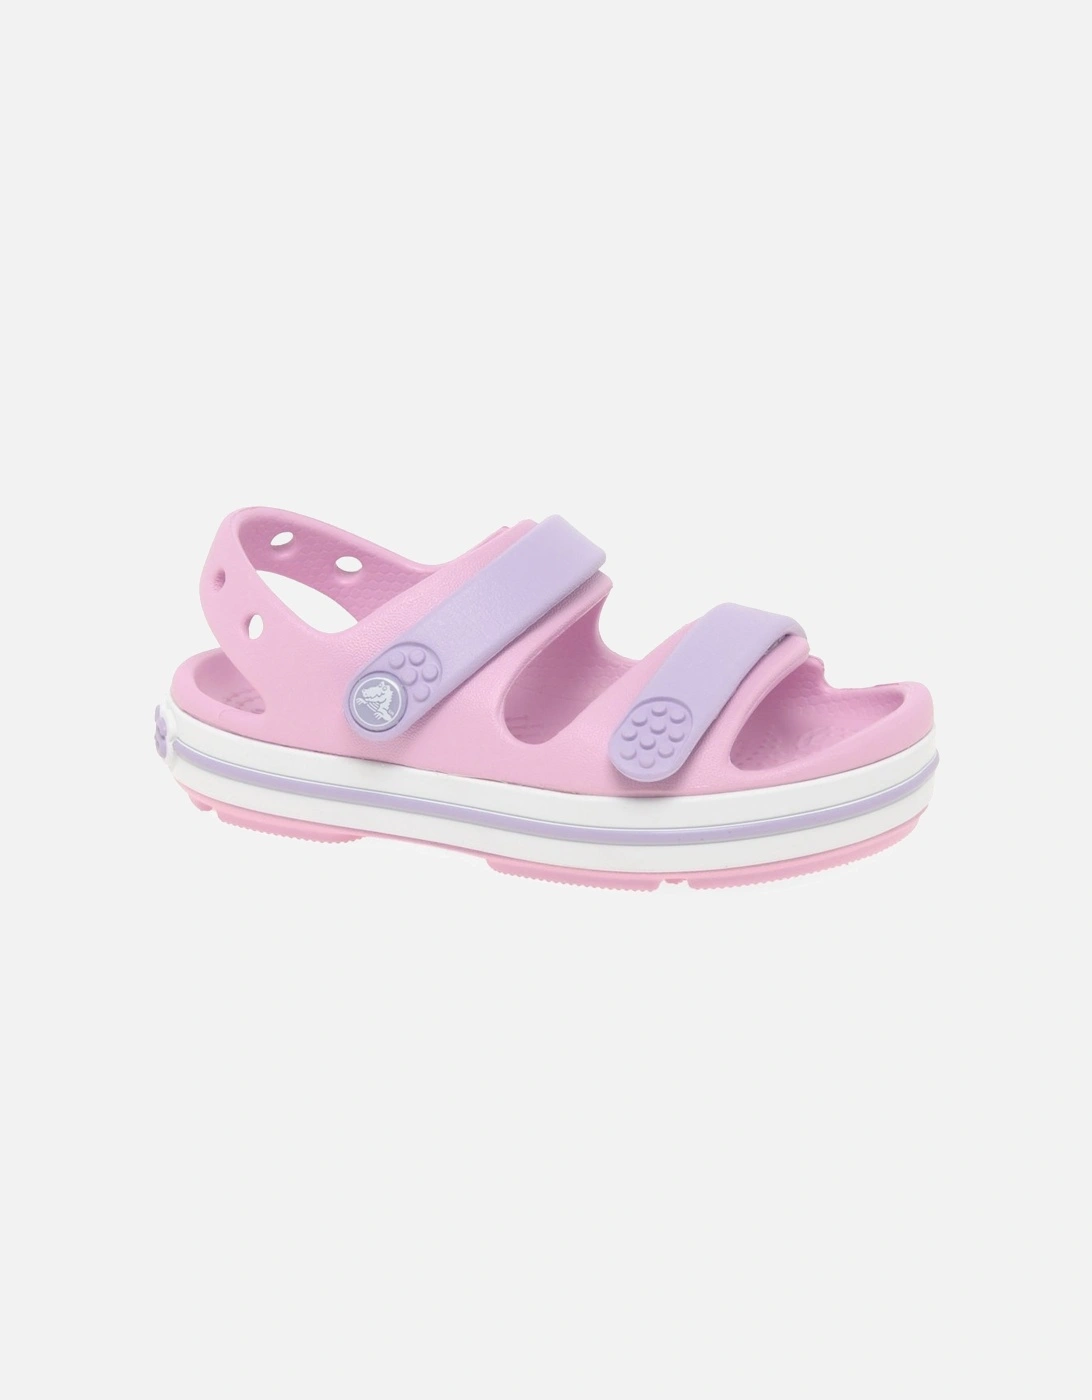 Crocband Girls Infant Sandals, 8 of 7